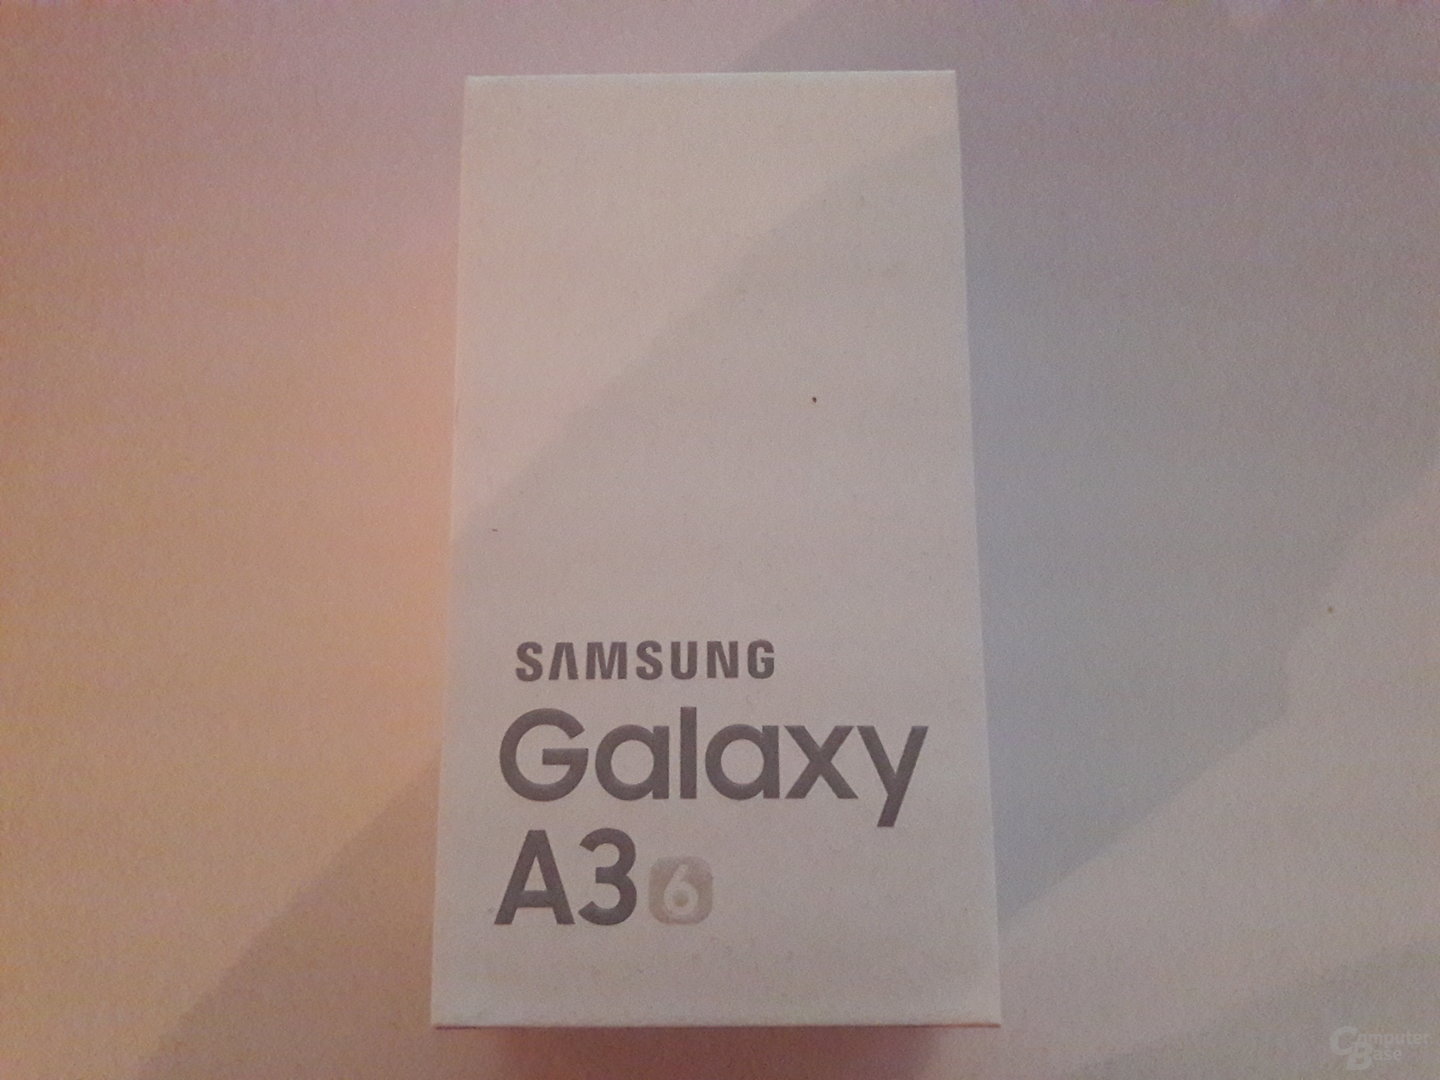 Samsung Galaxy A3 (2016) im Test – Kunstlicht